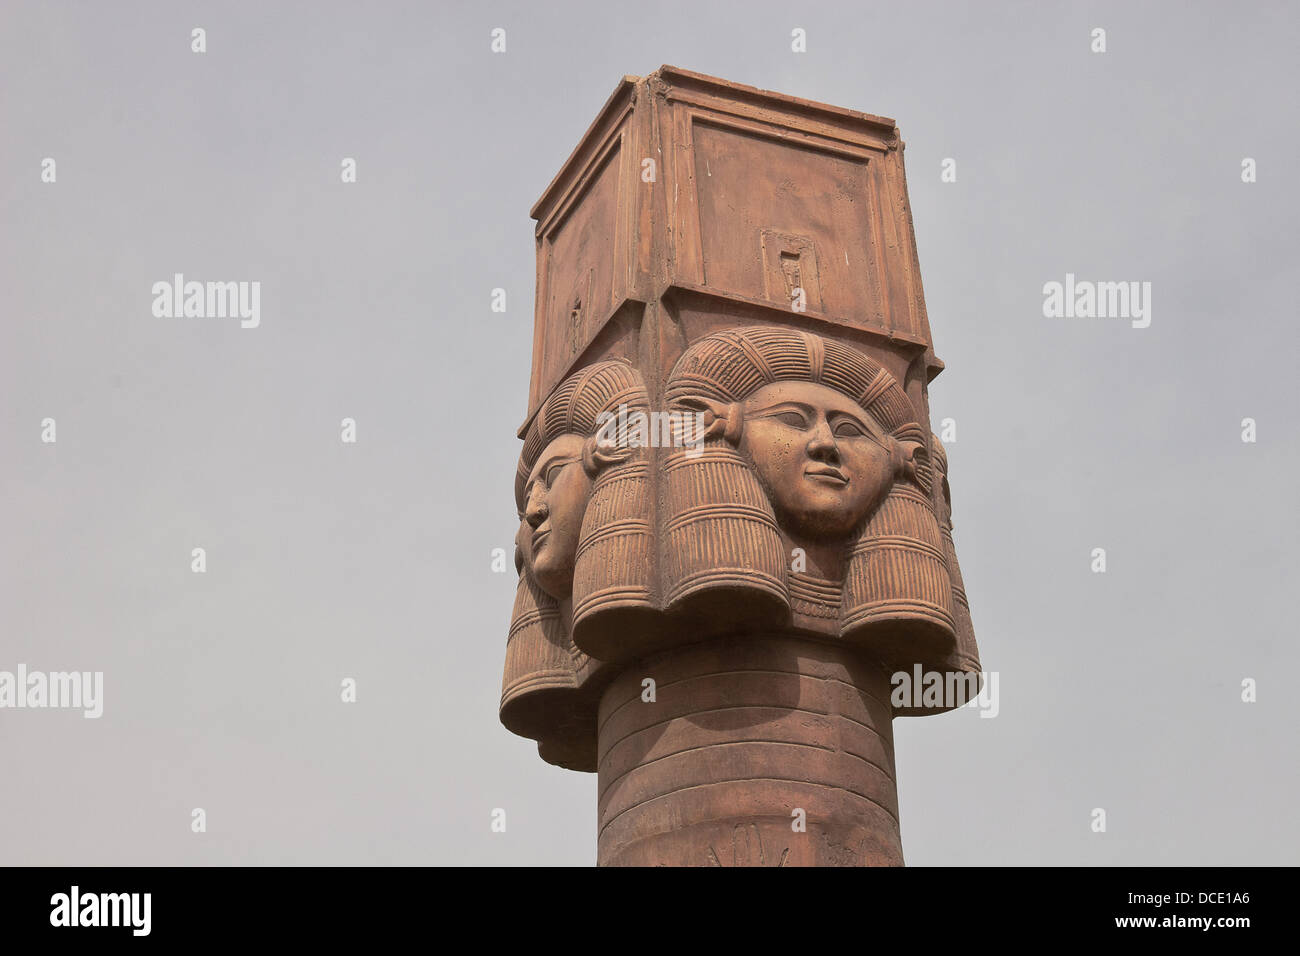 Les colonnes de pierre avec des symboles de l'Égypte sur le dessus Banque D'Images